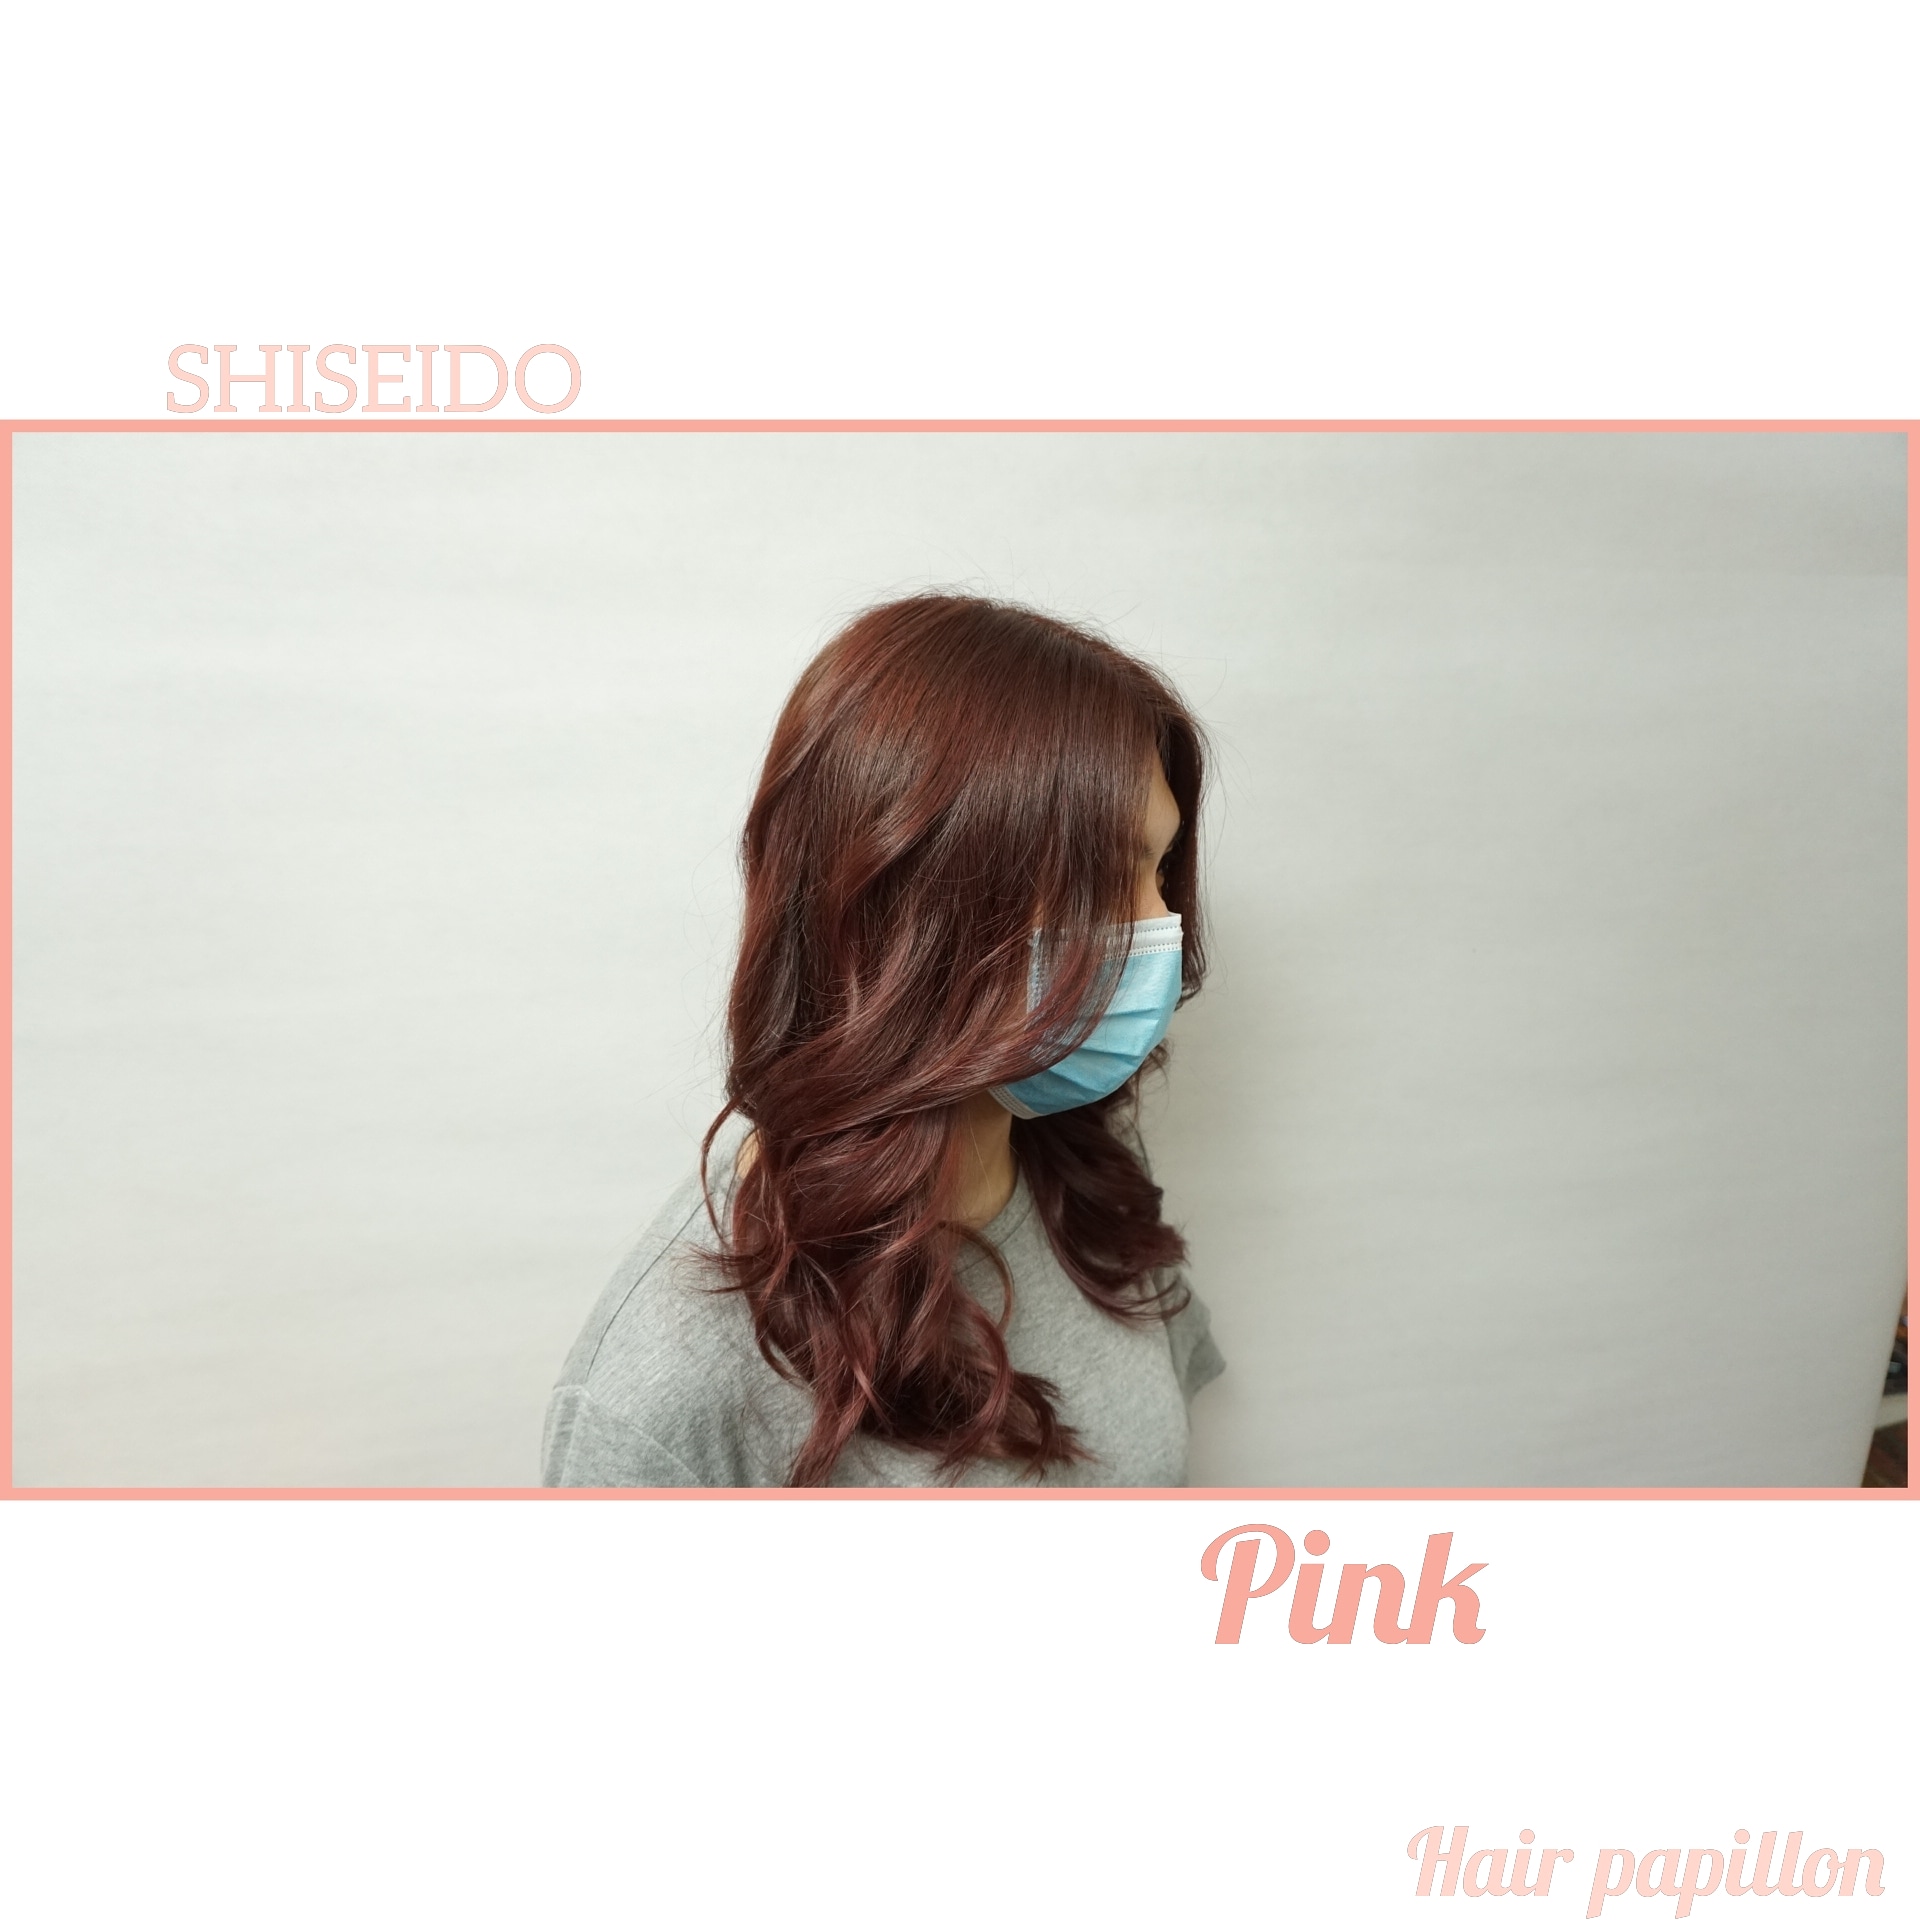 髮型作品参考:shiseido color